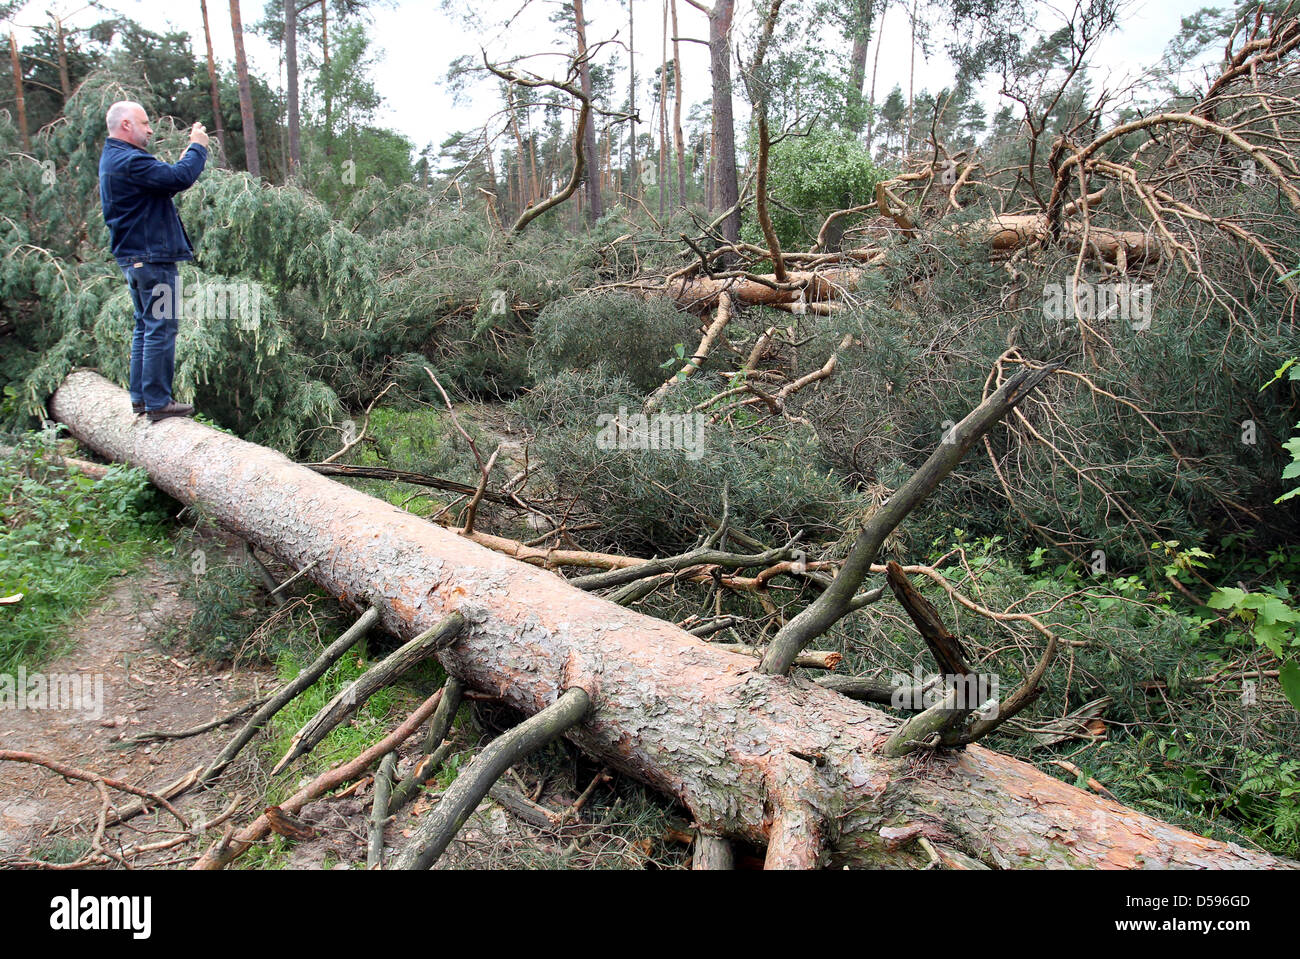 Ein Mann Fotos umgestürzte Bäume, die gebogen oder entwurzelte wegen eines Sturms in einem Wald auf der B103 in der Nähe von Ganzlin, Deutschland, 13. Juni 2010. Allein in diesem schweren Treffer Sonderbereich, südlich von Plau am See, die geringe '' Doris'' bis zu 1.000 Bäume fallen verursacht. Jedoch nach Angaben der Polizei immer mehr '' Katastrophe Touristen '' haben ihren Weg gefunden '' fotografieren zu einem Tarif-dich-wir Stockfoto